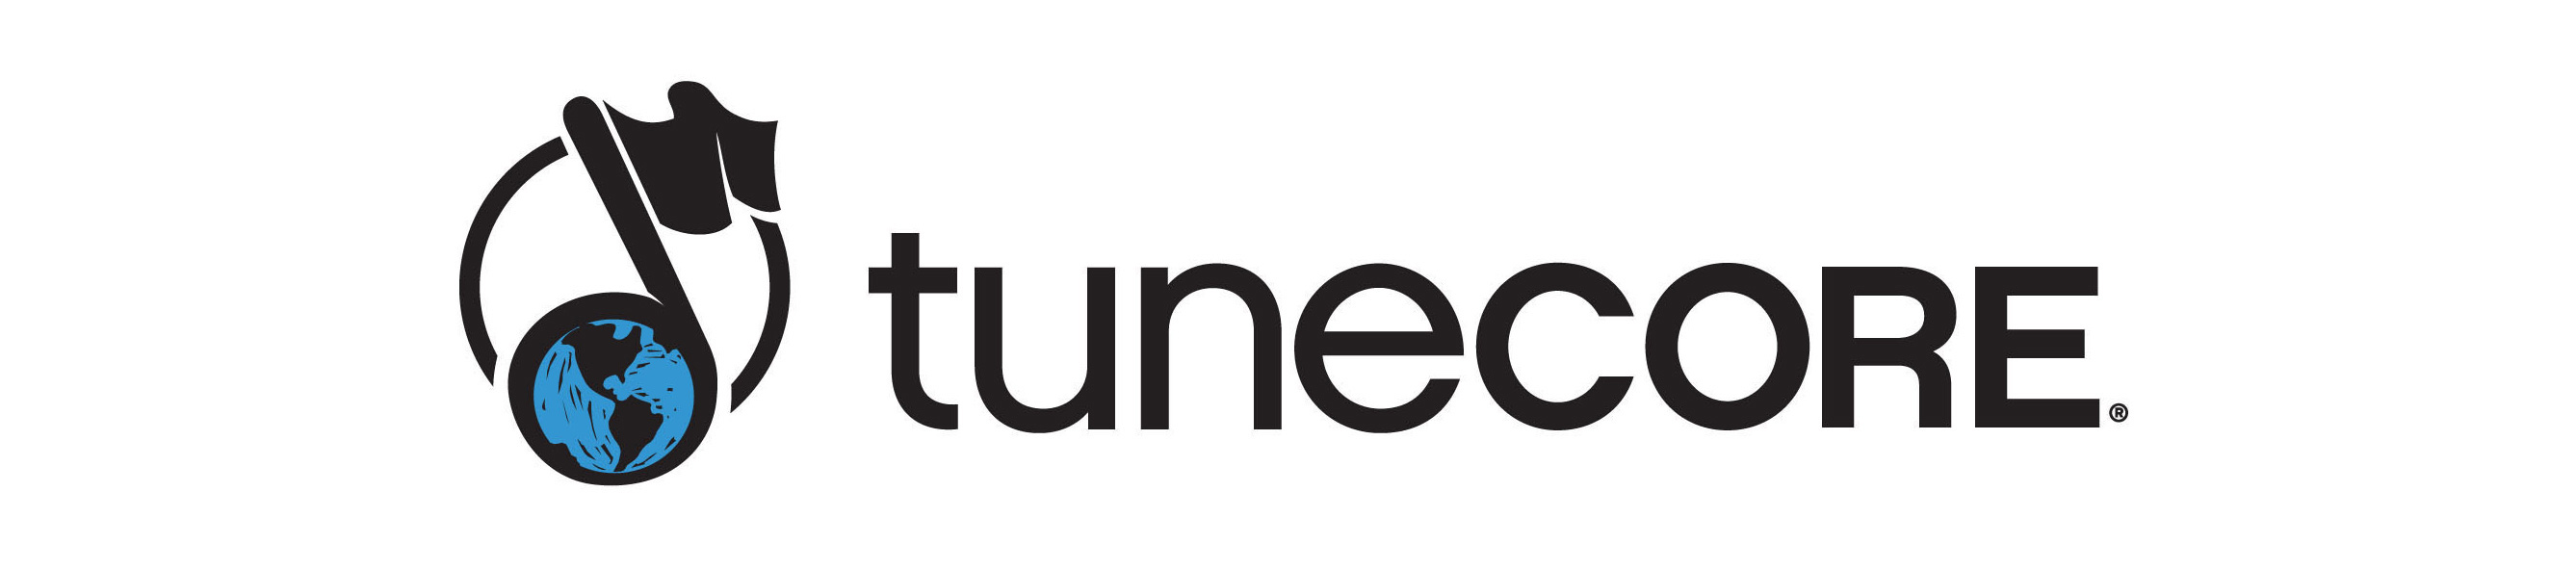 TuneCore launches in Australia